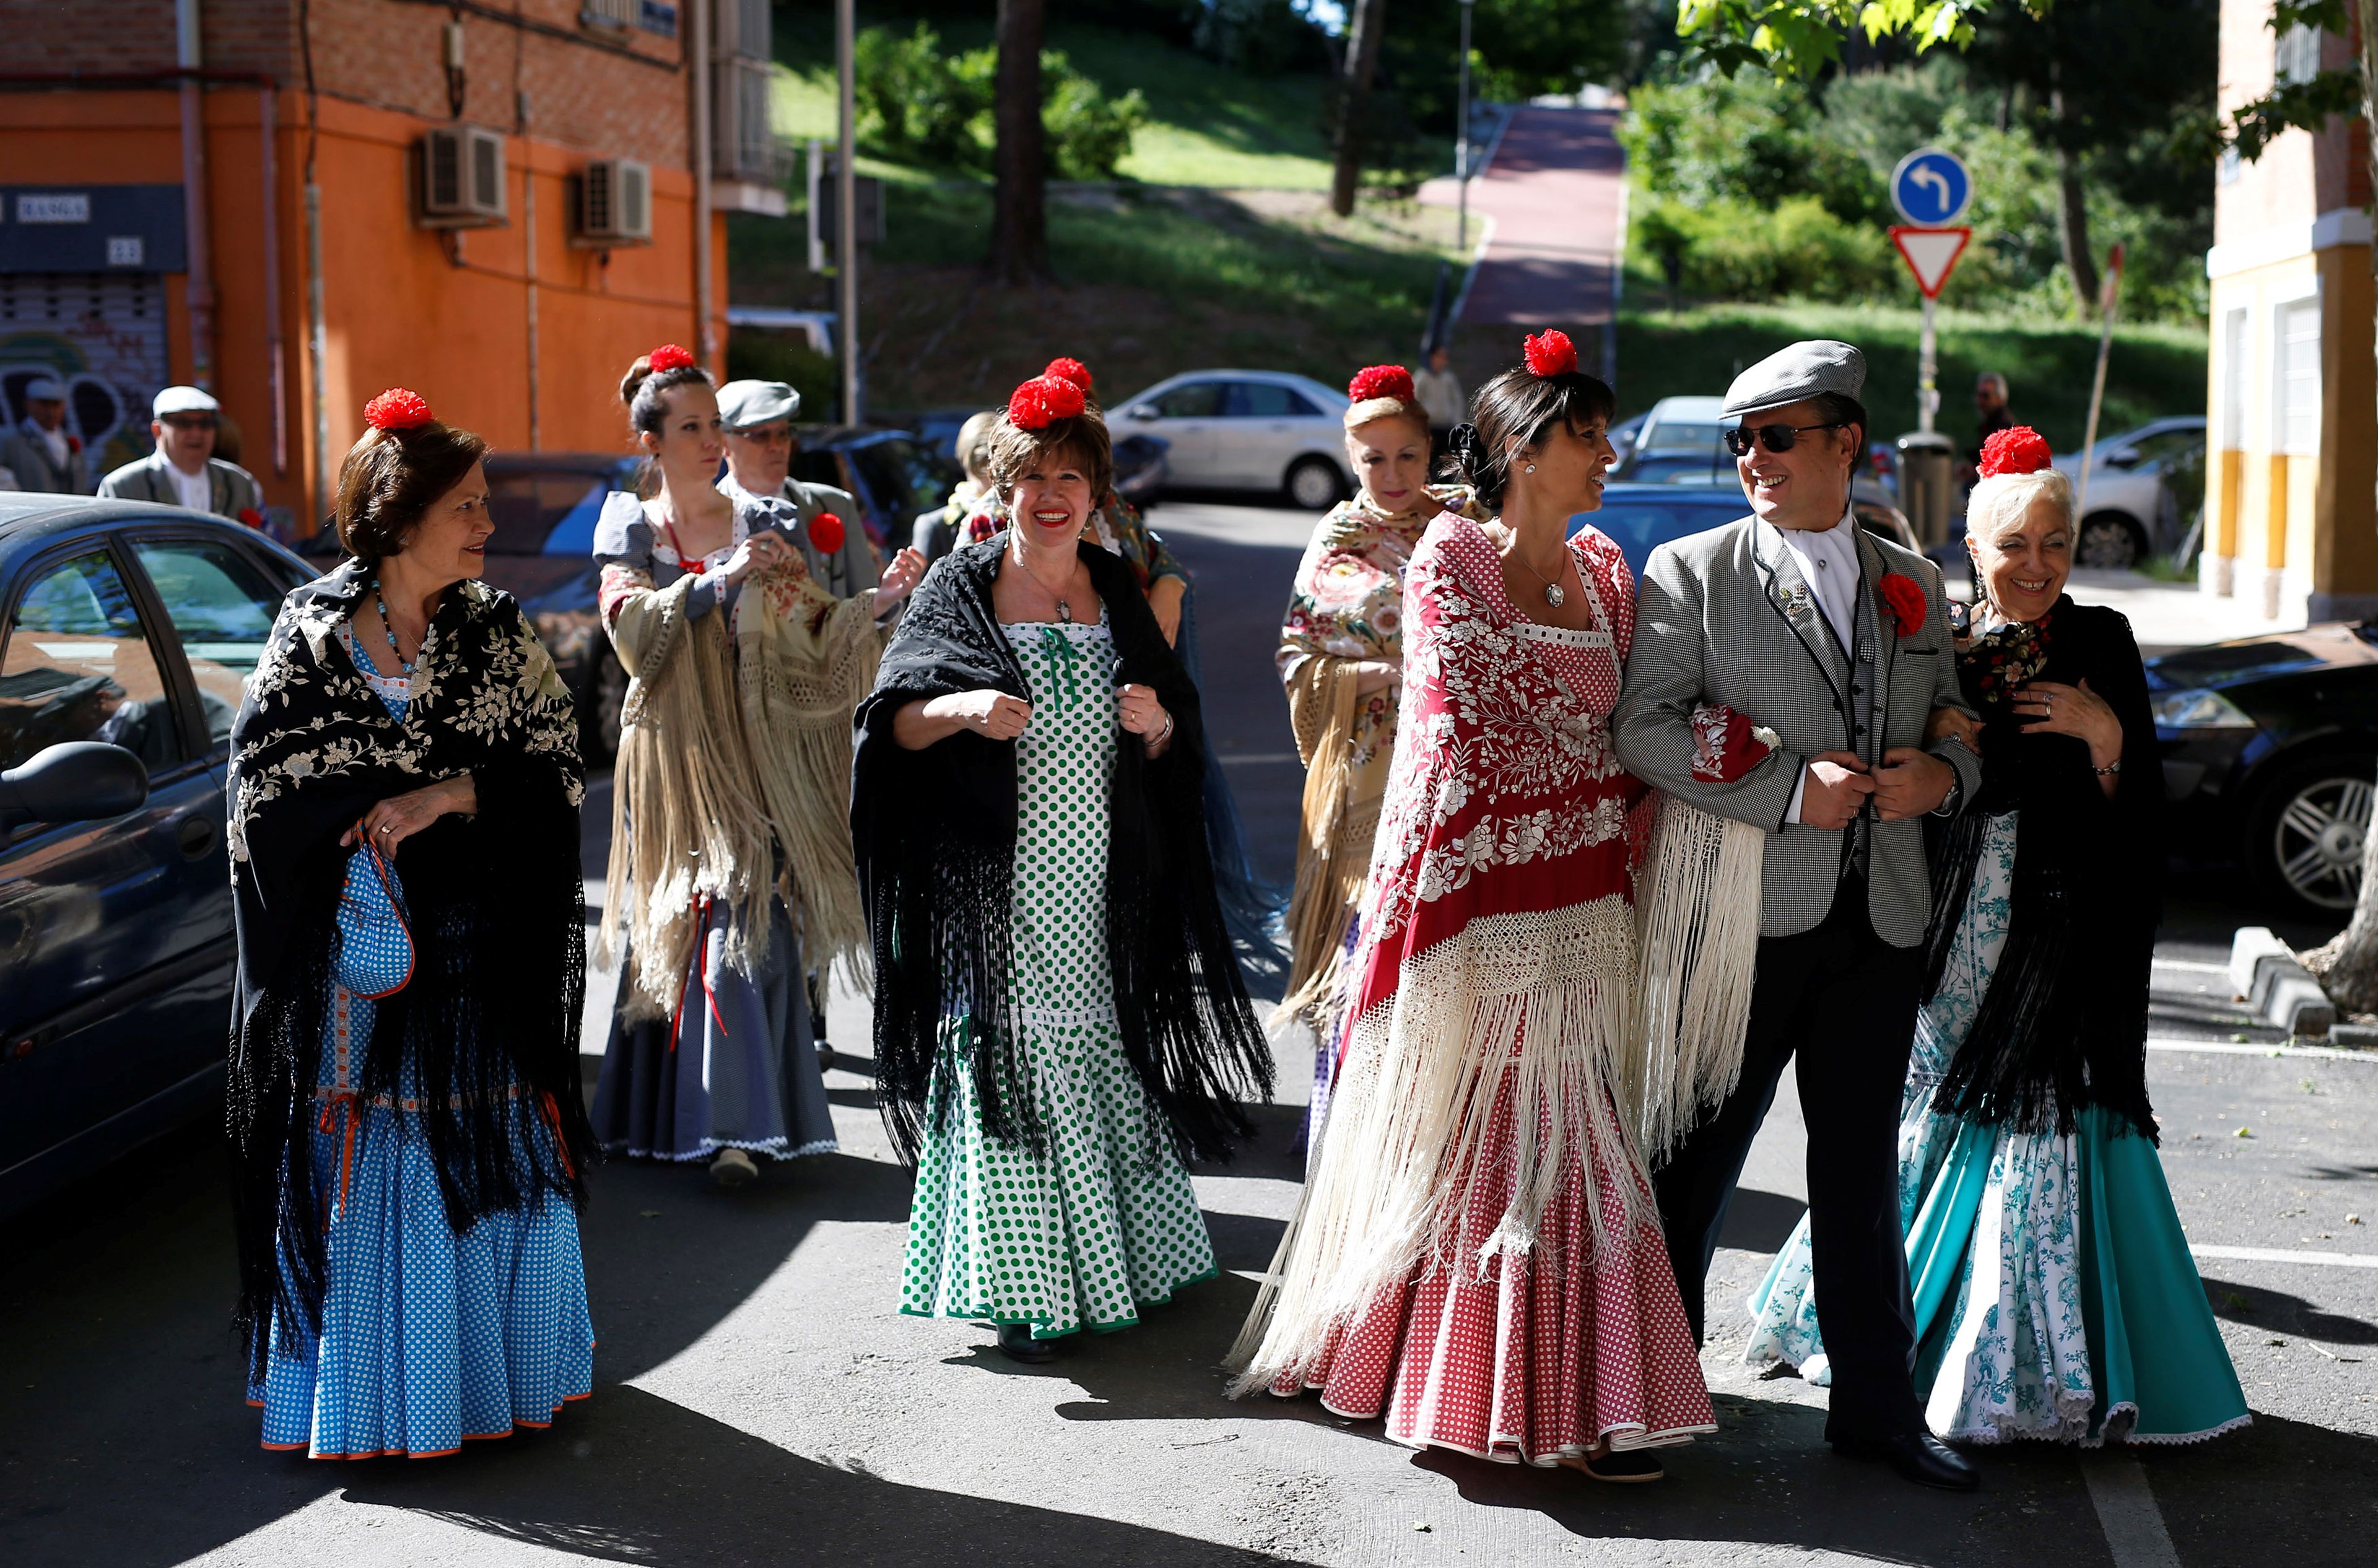 Grupo de amigos celebrando la festividad de San Isidro, que tiene lugar cada 15 de mayo en Madrid.